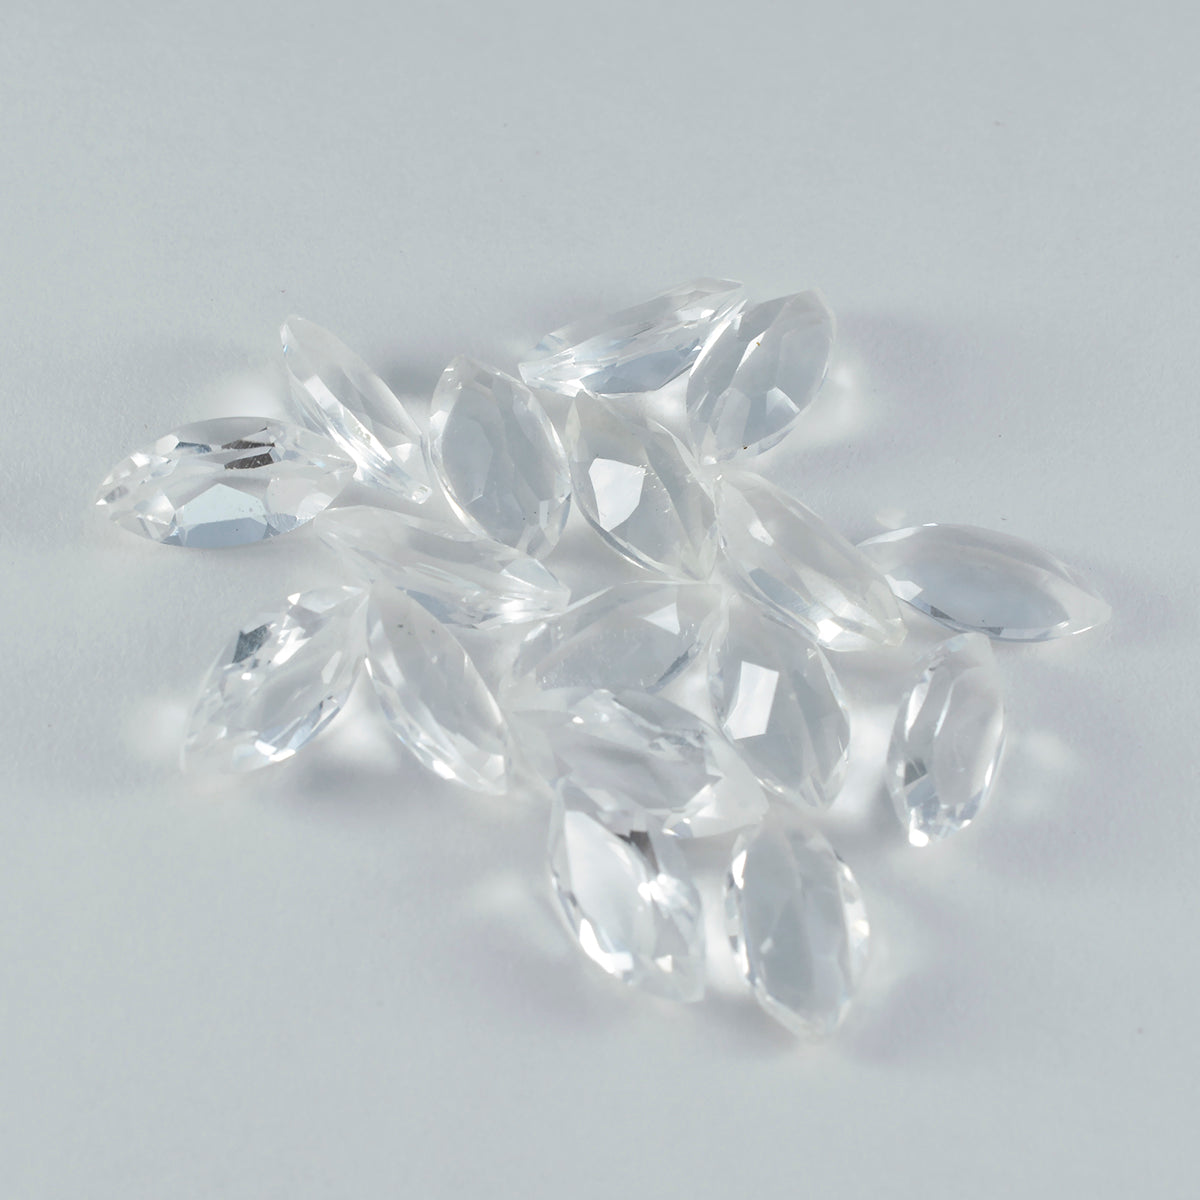 Riyogems 1pc quartz cristal blanc facetté 7x14mm forme marquise a+1 pierre de qualité